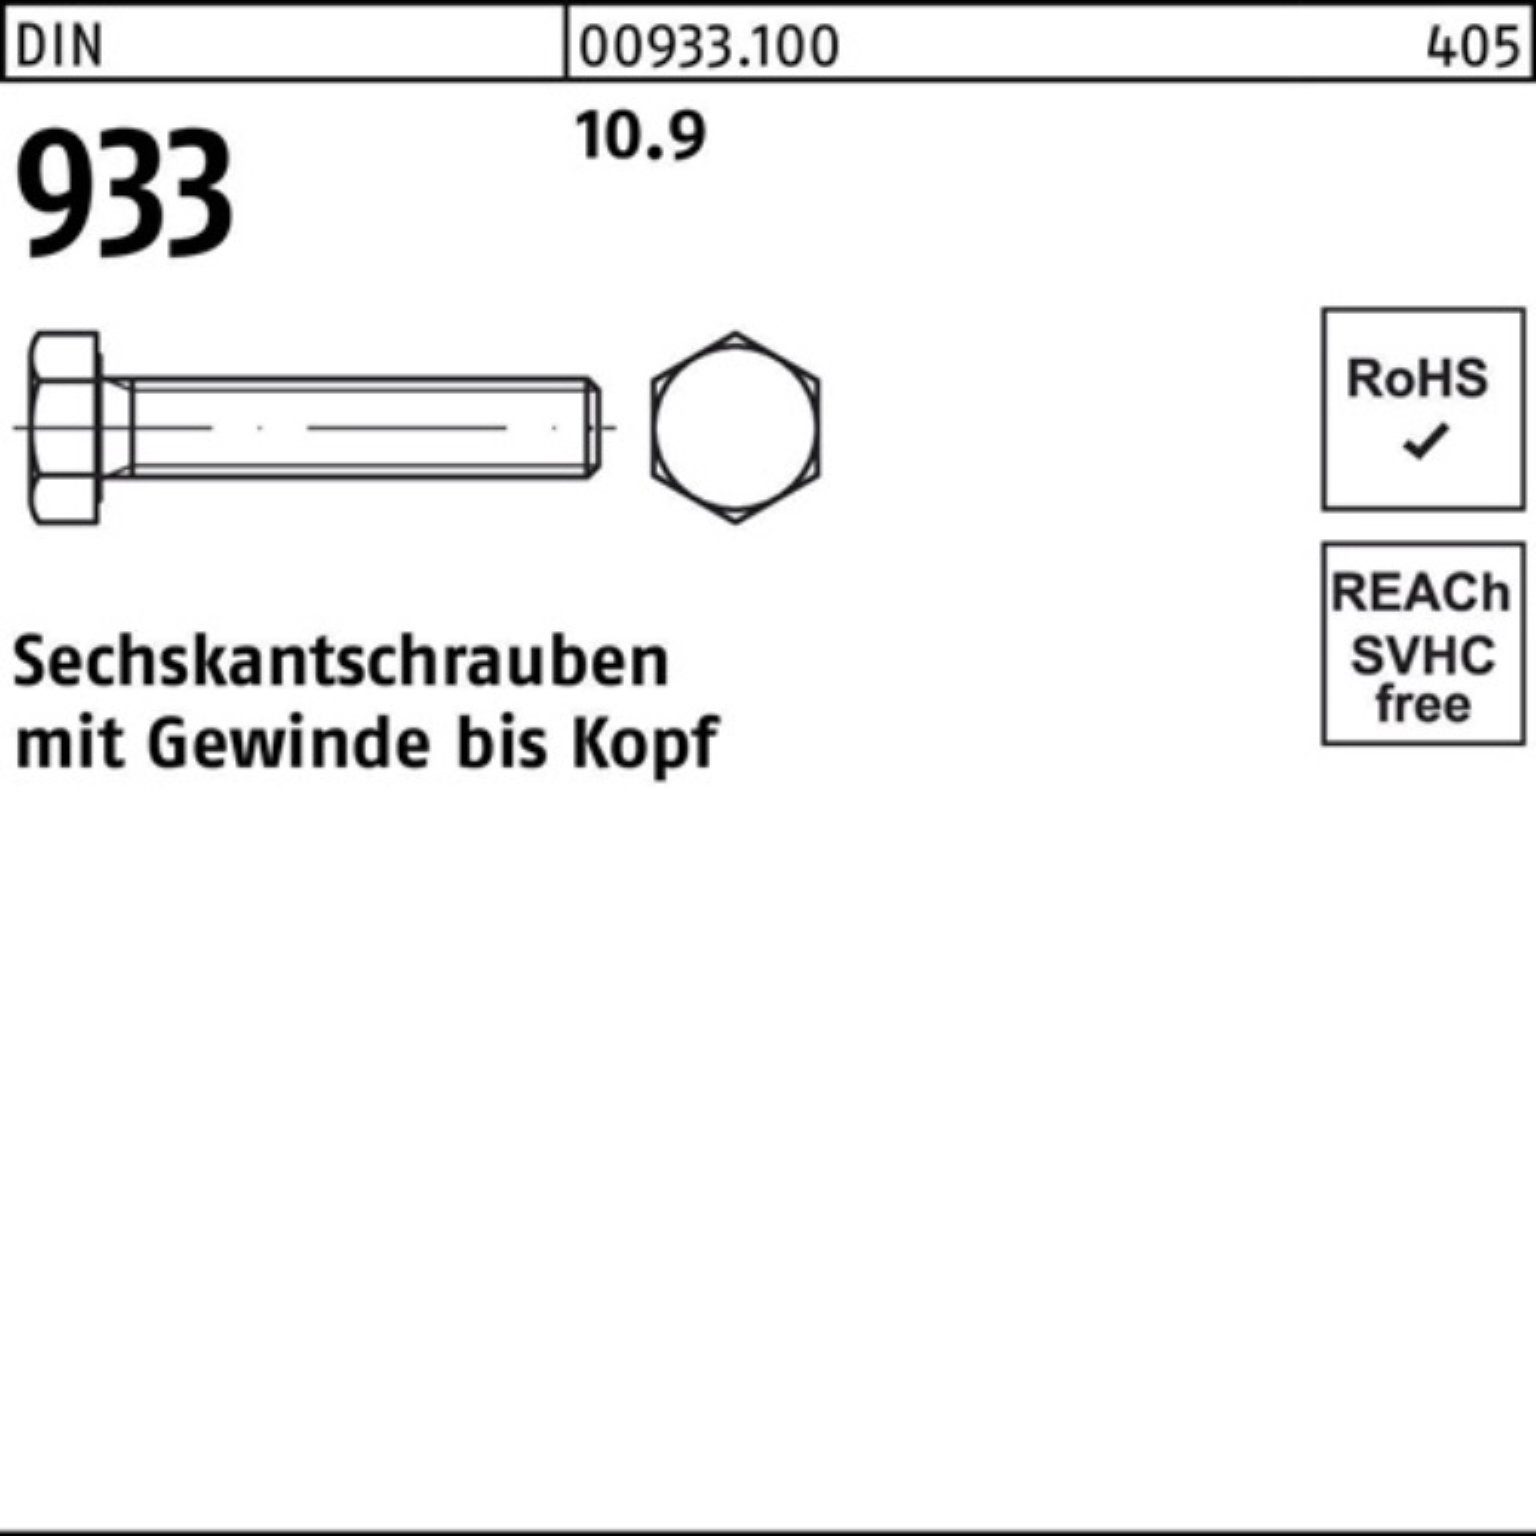 Pack 200er DIN DIN Sechskantschraube 12 10.9 93 Reyher 200 933 Sechskantschraube VG M10x Stück